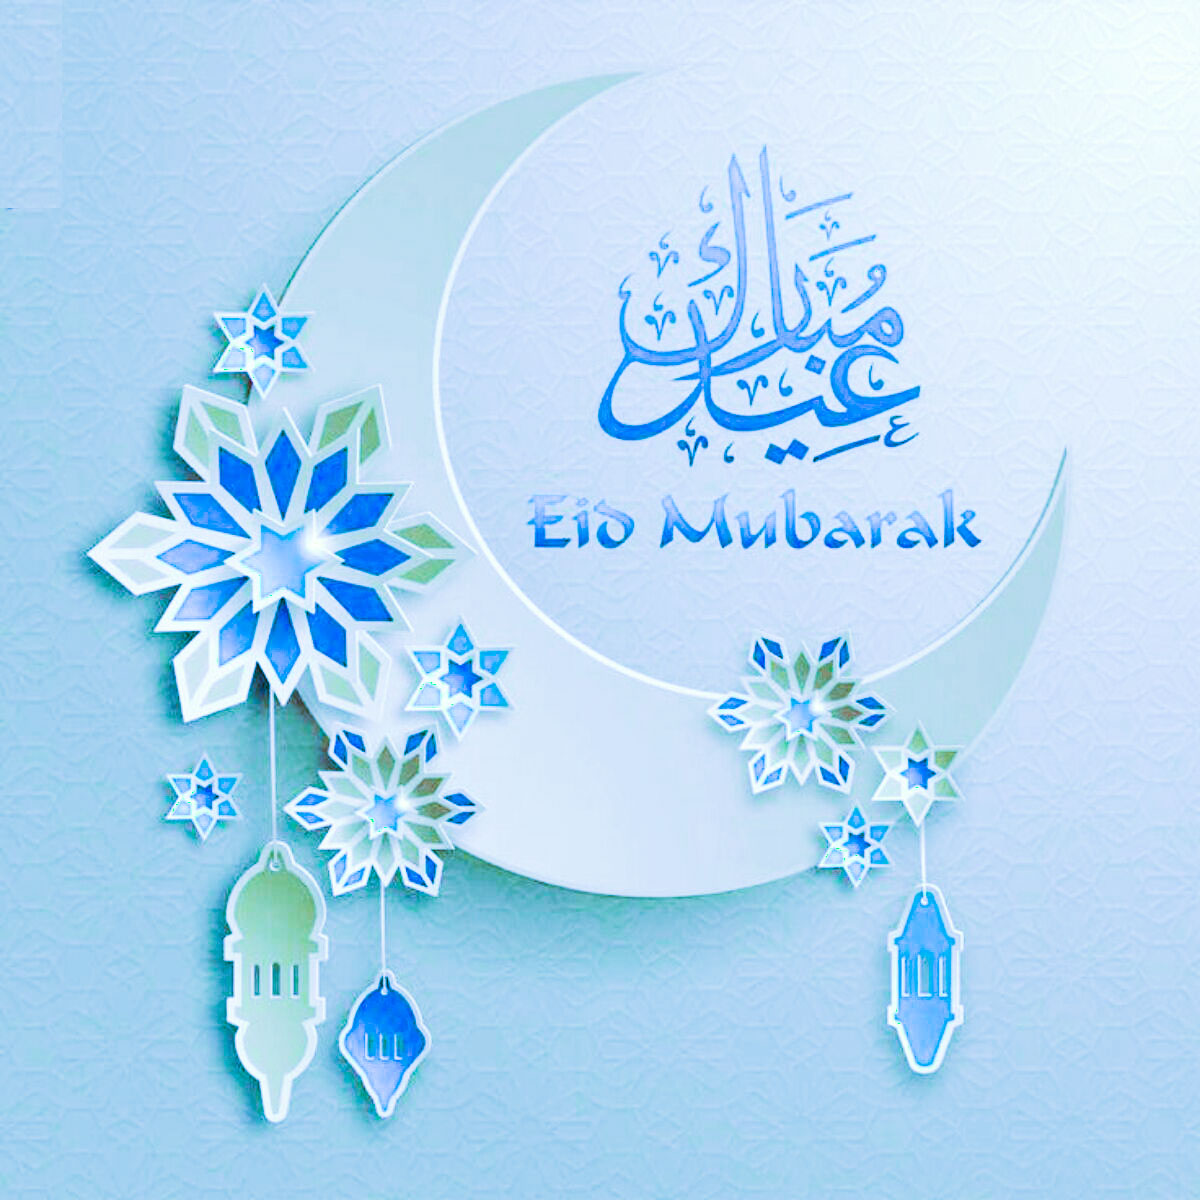 Eid ul adha 2022 Images